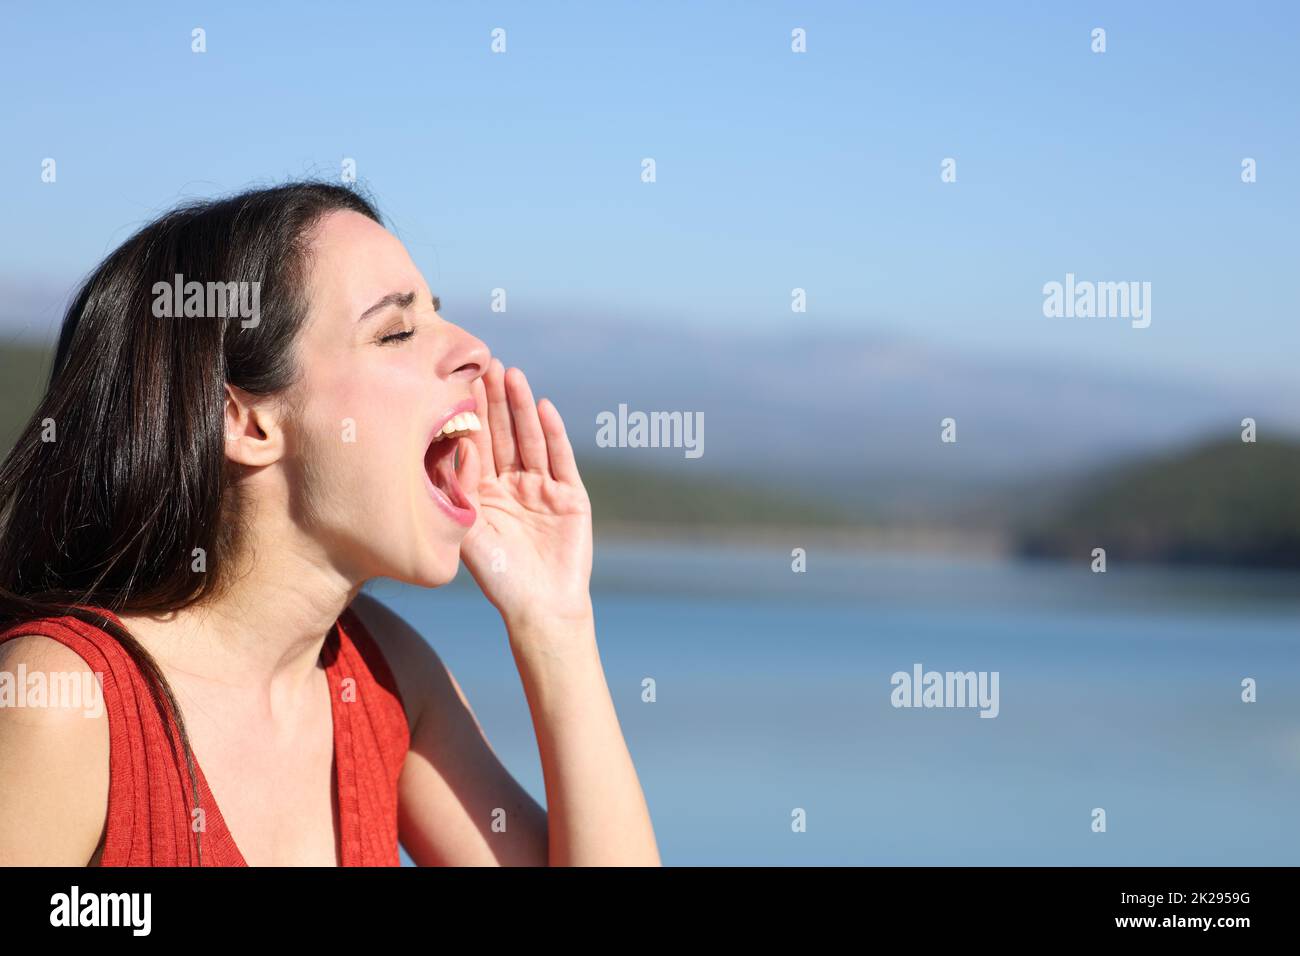 Mujer gritando fuerte en un lago Foto de stock